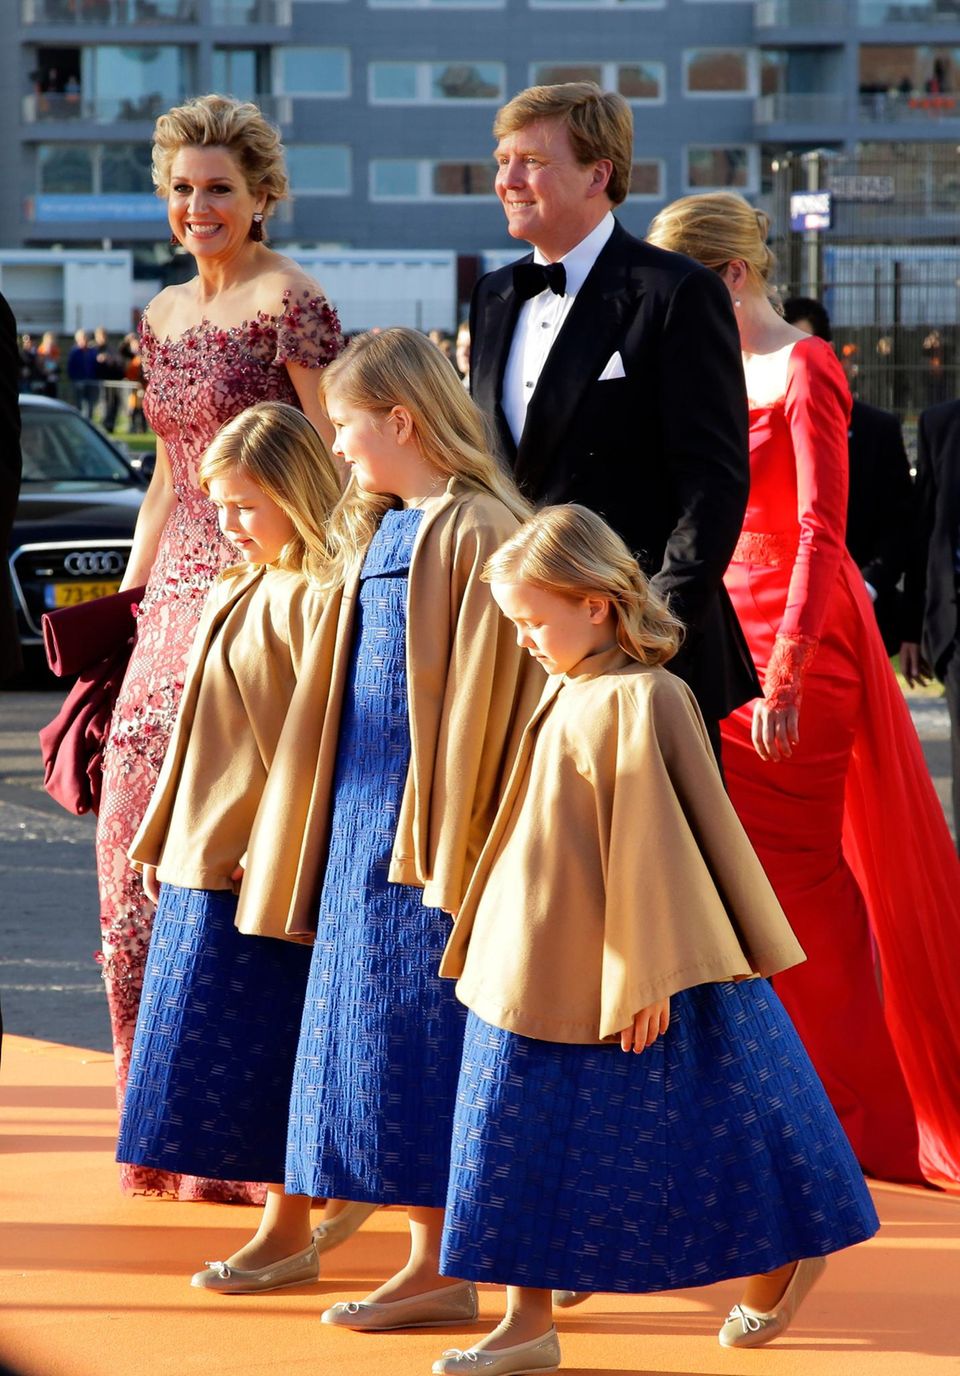 Máxima Zorreguieta blieb auch nach ihrer Hochzeit mit dem niederländischen Thronfolger katholisch. Inzwischen hat das Königspaar drei Töchter, die evangelisch erzogen werden.